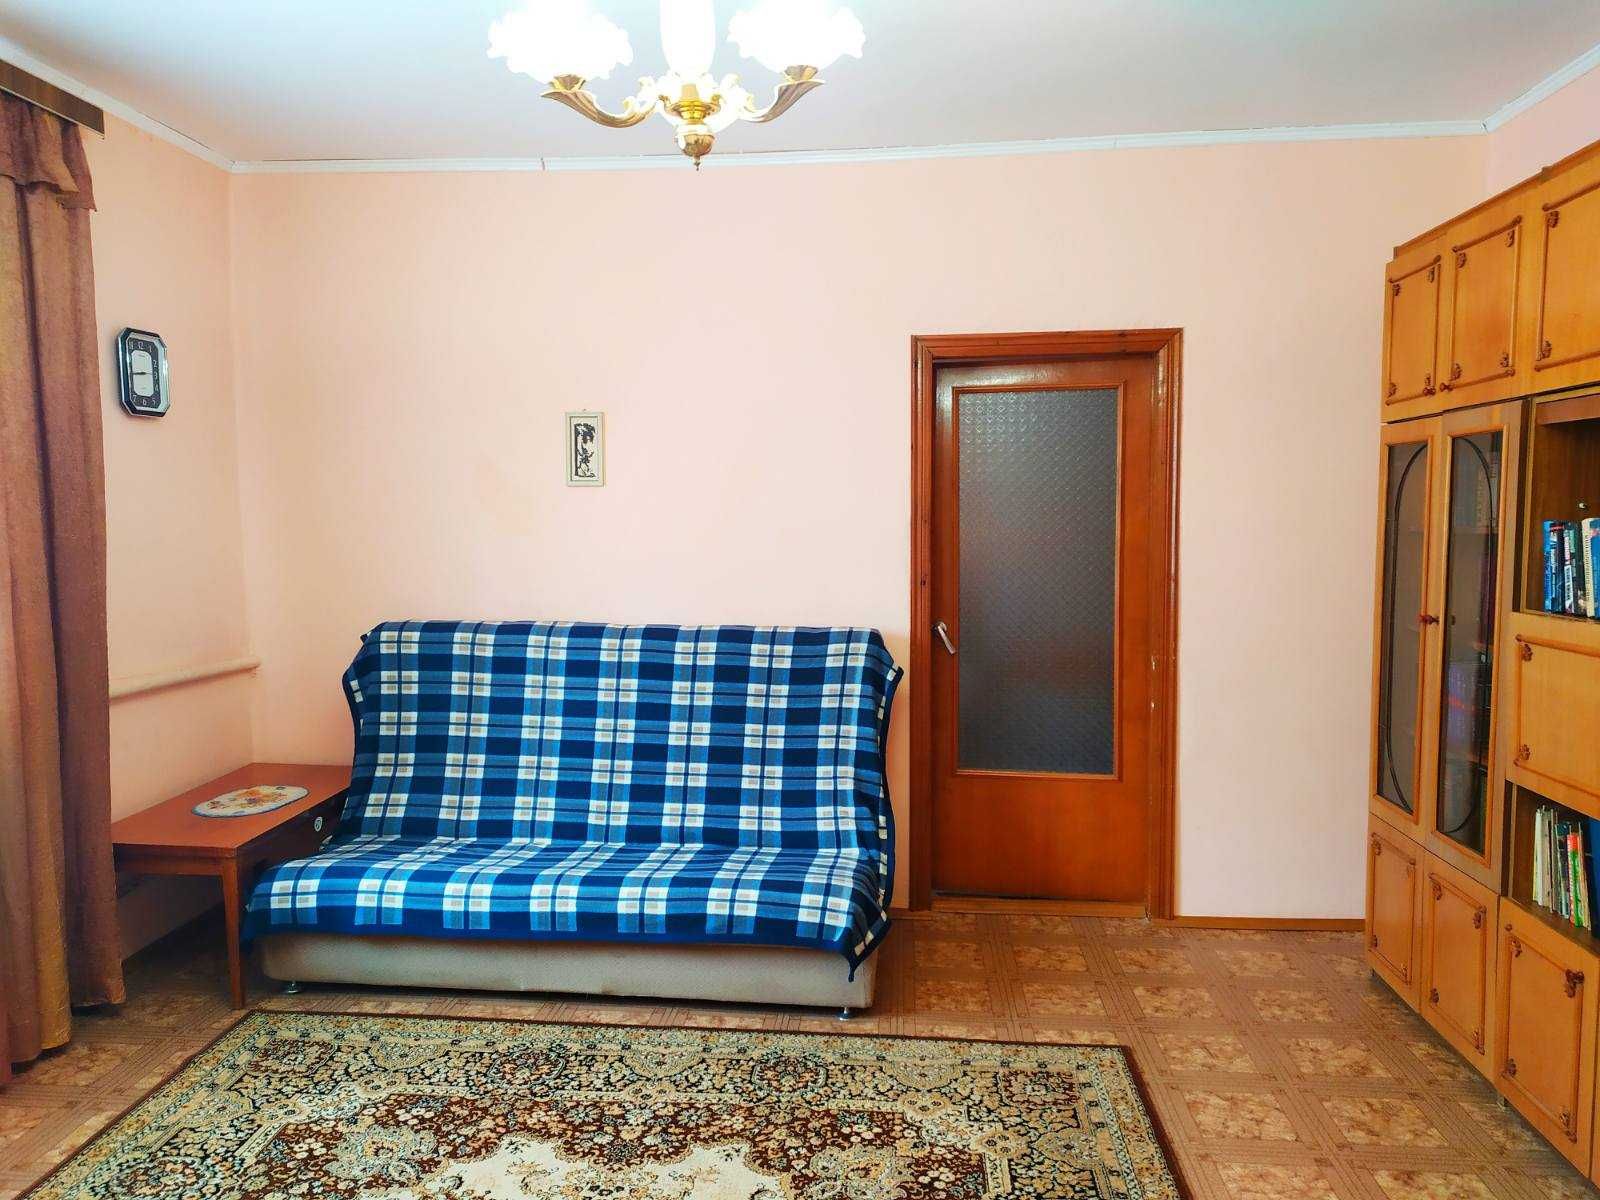 777 Продам дом в Краснополье.